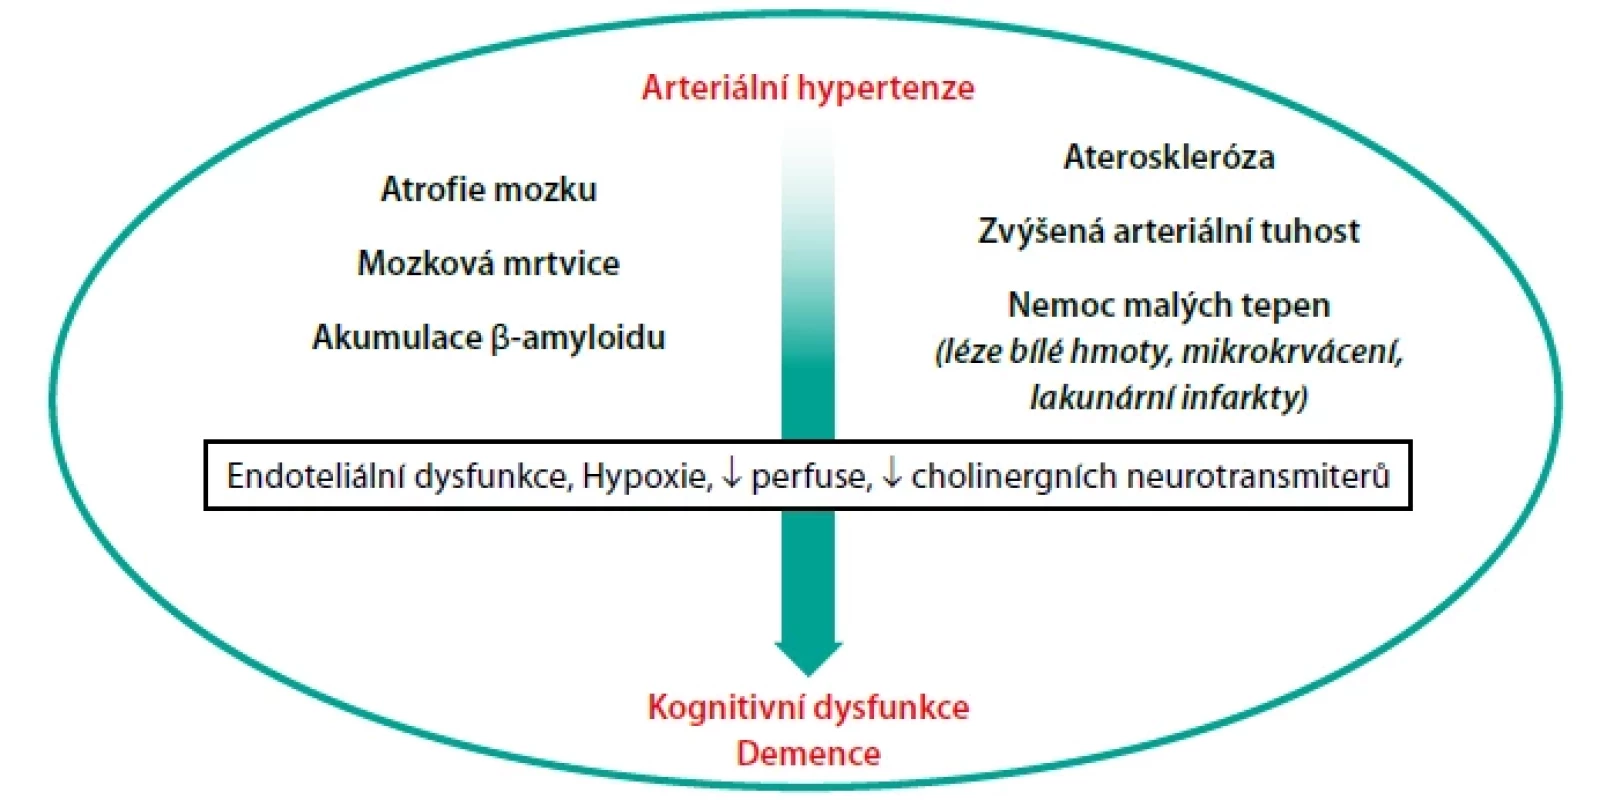 Možné mechanismy vzniku kognitivní dysfunkce/demence u pacientů s arteriální hypertenzí